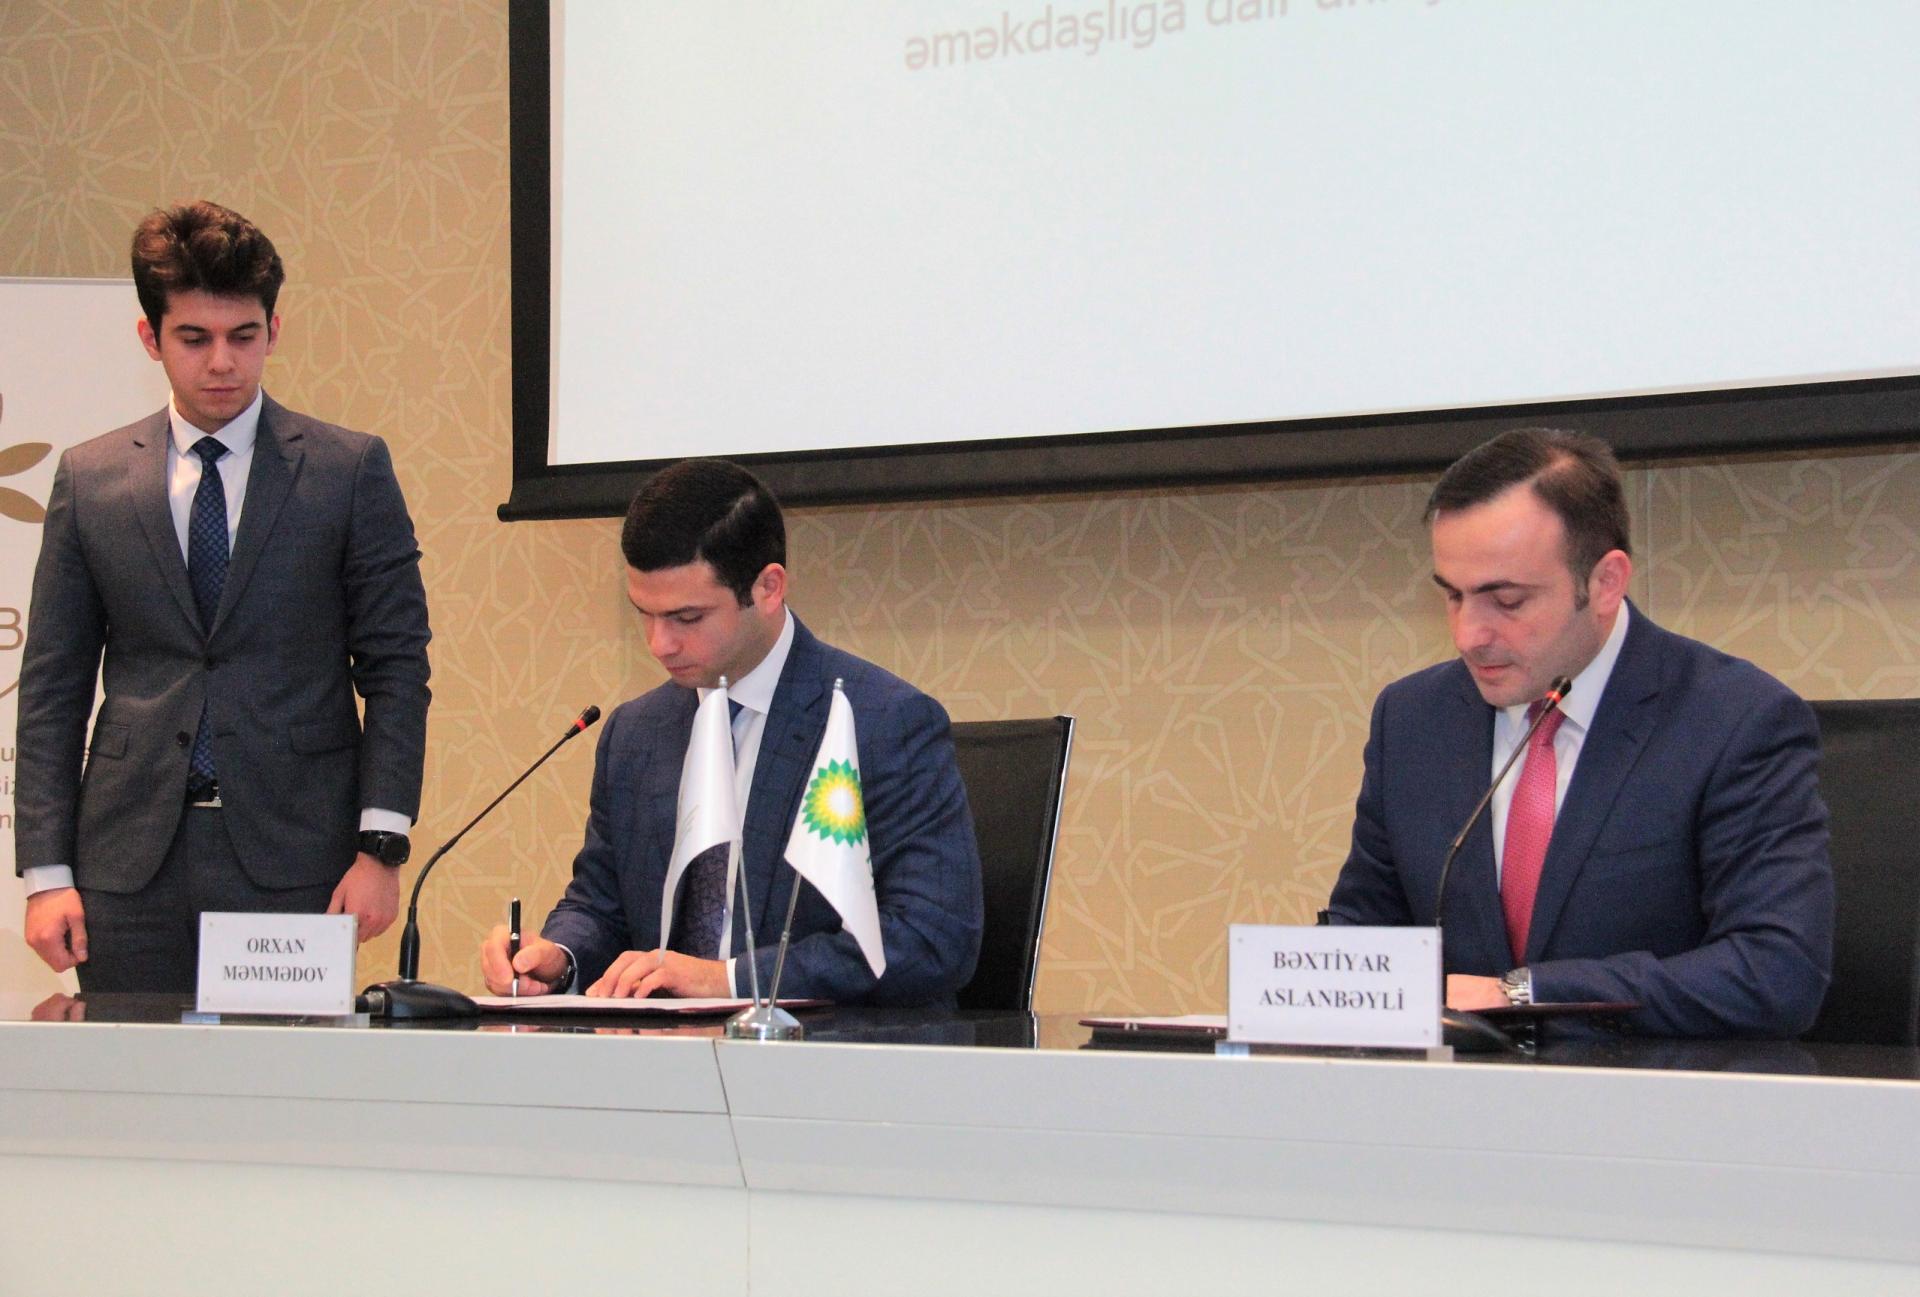 KOBİA və BP şirkəti arasında əməkdaşlığa dair Anlaşma Memorandumu imzalanıb (FOTO)